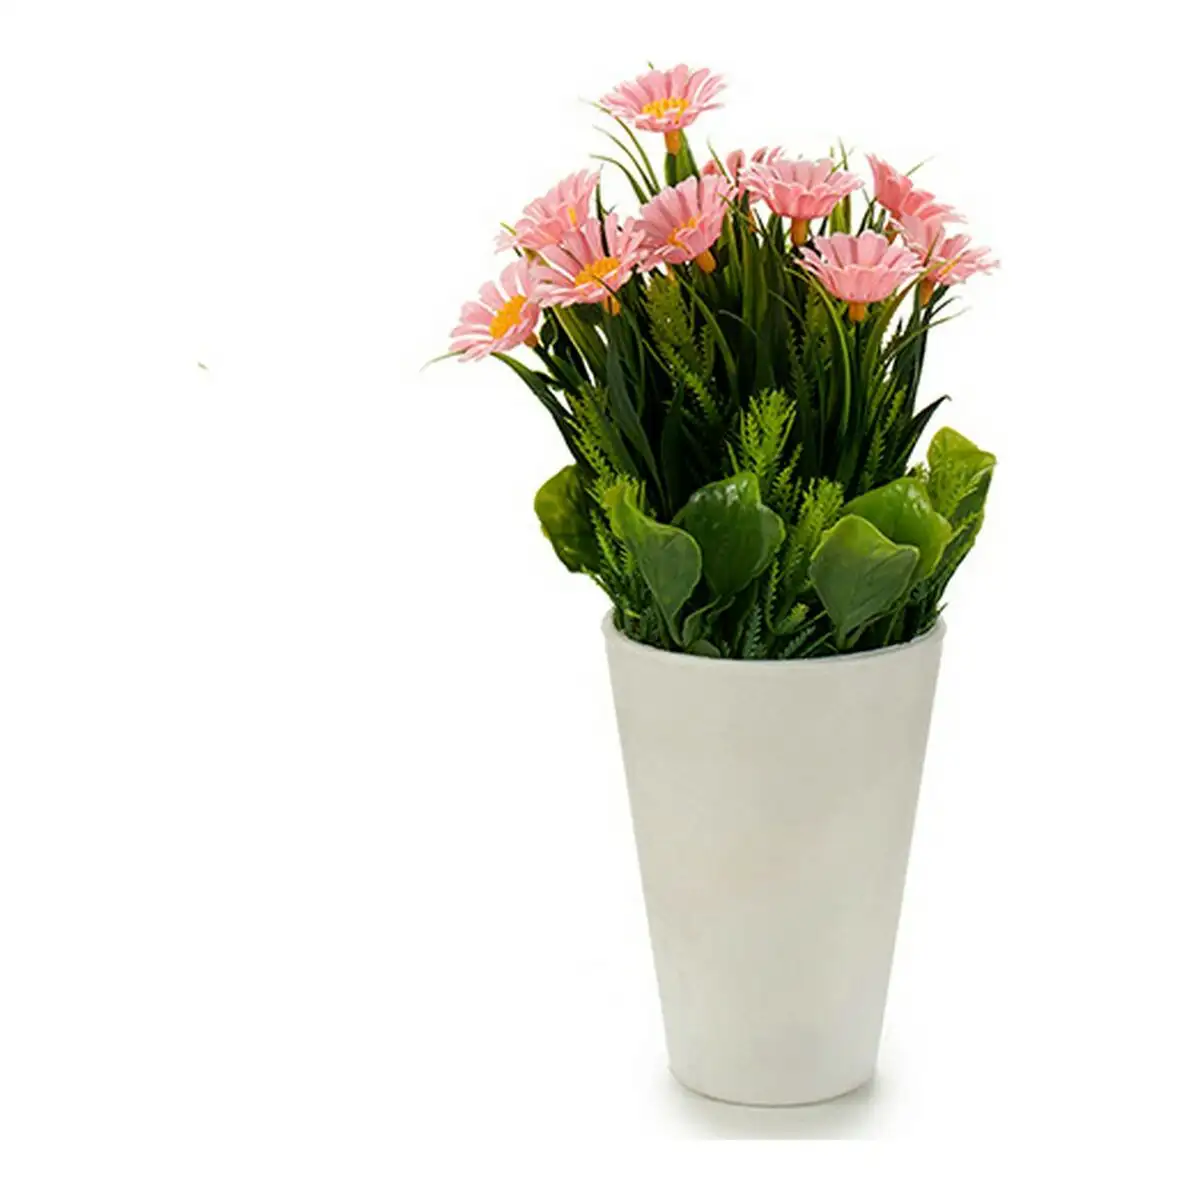 Plante decorative marguerite 12 x 21 x 12 cm rose lila blanc jaune plastique_6679. DIAYTAR SENEGAL - Votre Plateforme Shopping de Confiance. Naviguez à travers nos rayons et choisissez des produits fiables qui répondent à vos besoins quotidiens.